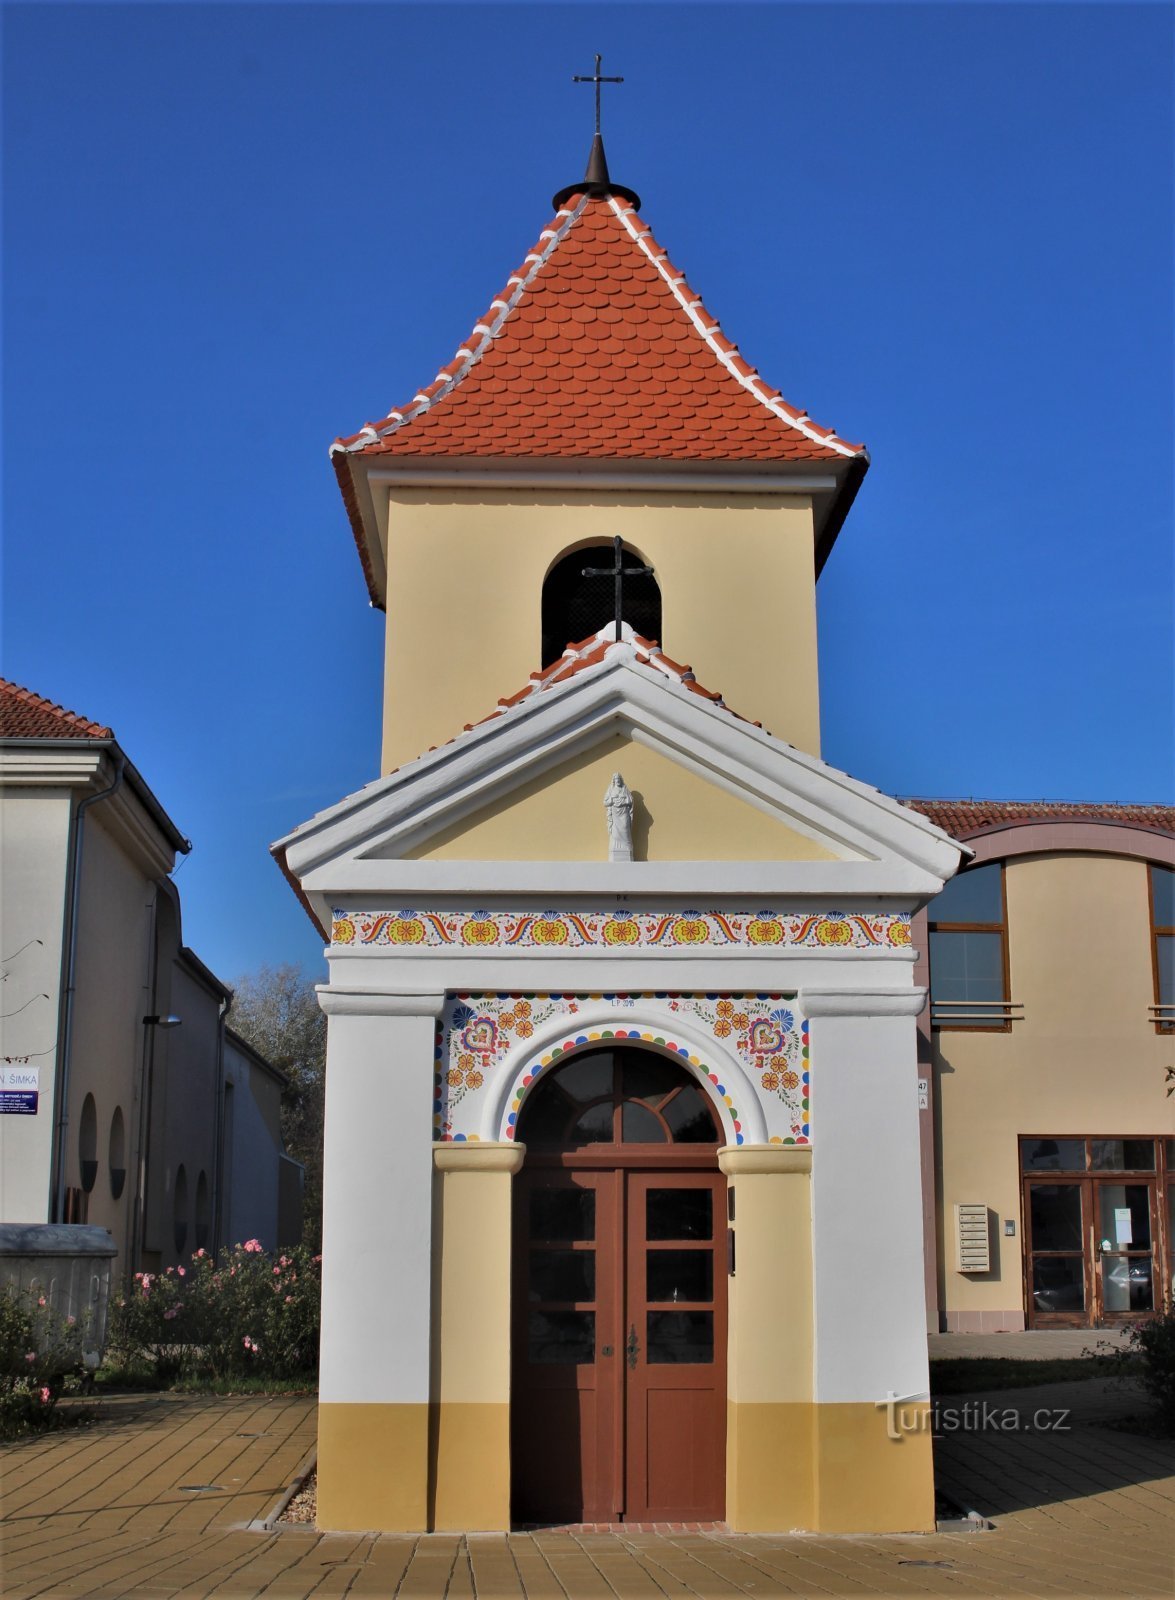 Stará Břeclav - Szent Kápolna. Rocha